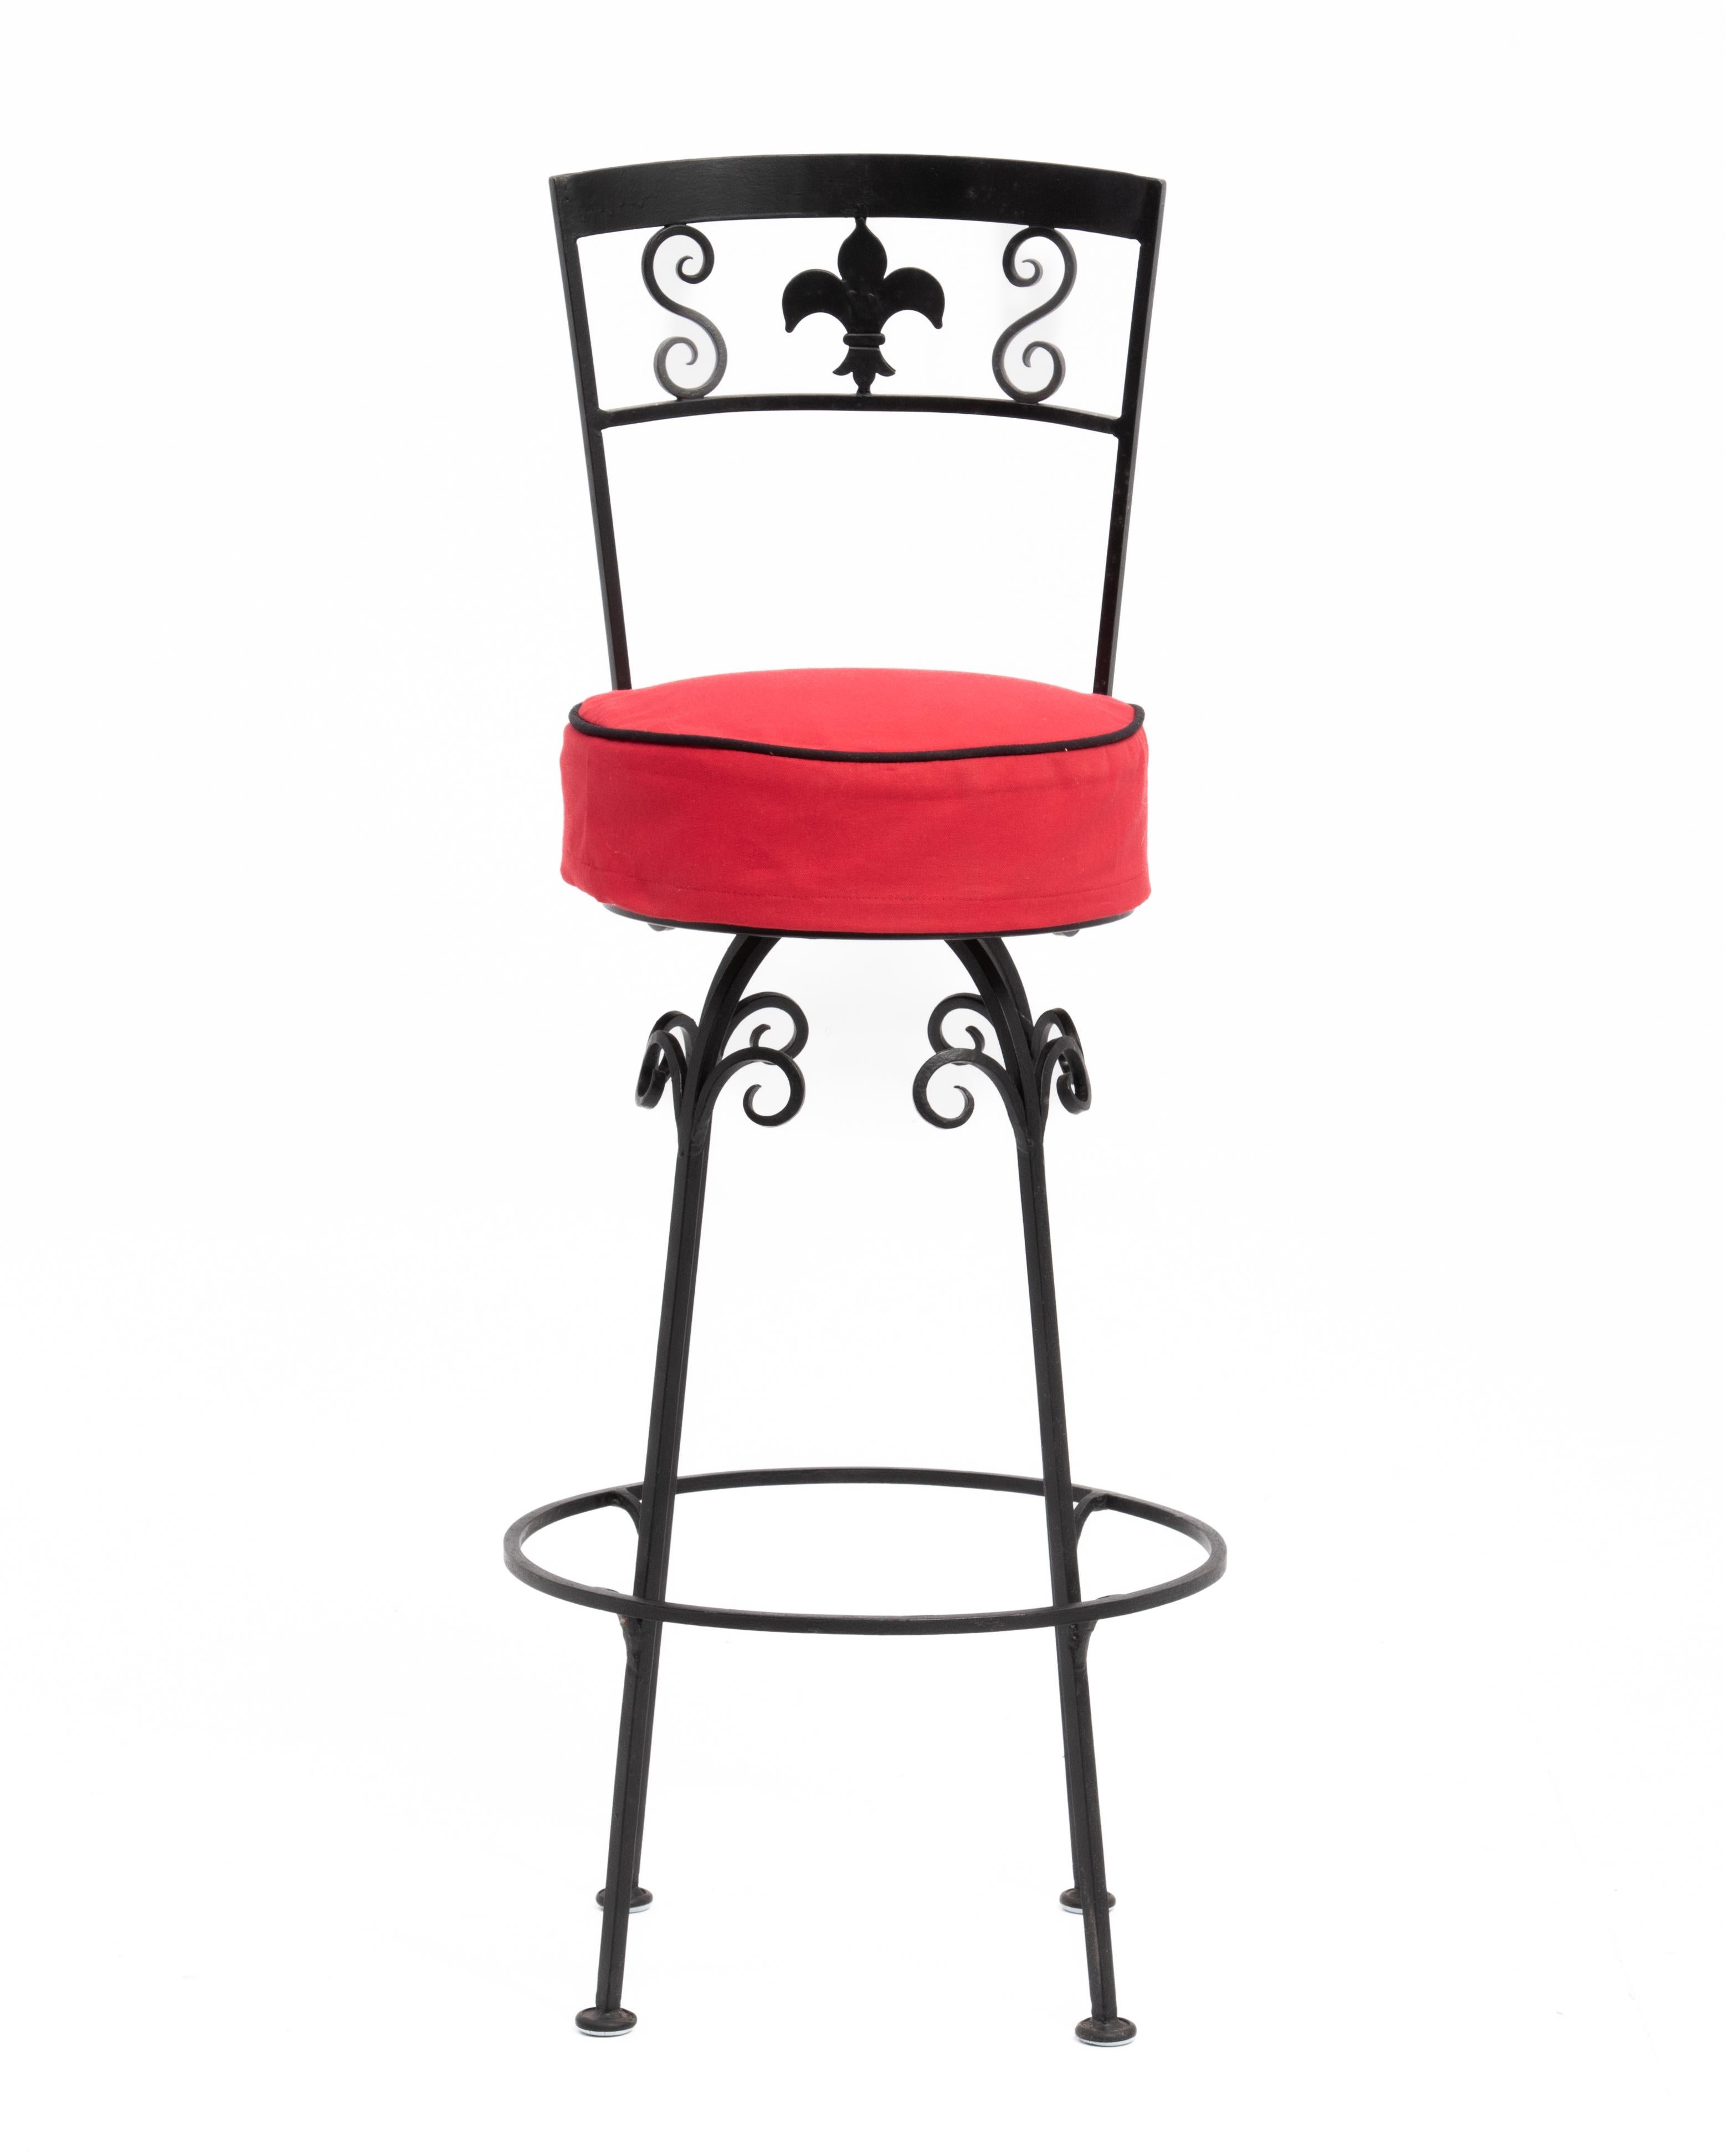 Un ensemble élégant de quatre tabourets de bar en fer forgé avec une décoration en forme de fleur de lys. Fabriqué sur mesure en Amérique pour un restaurant de New York dans les années 1960. Les tissus rouges sur les sièges sont des housses.
Nous